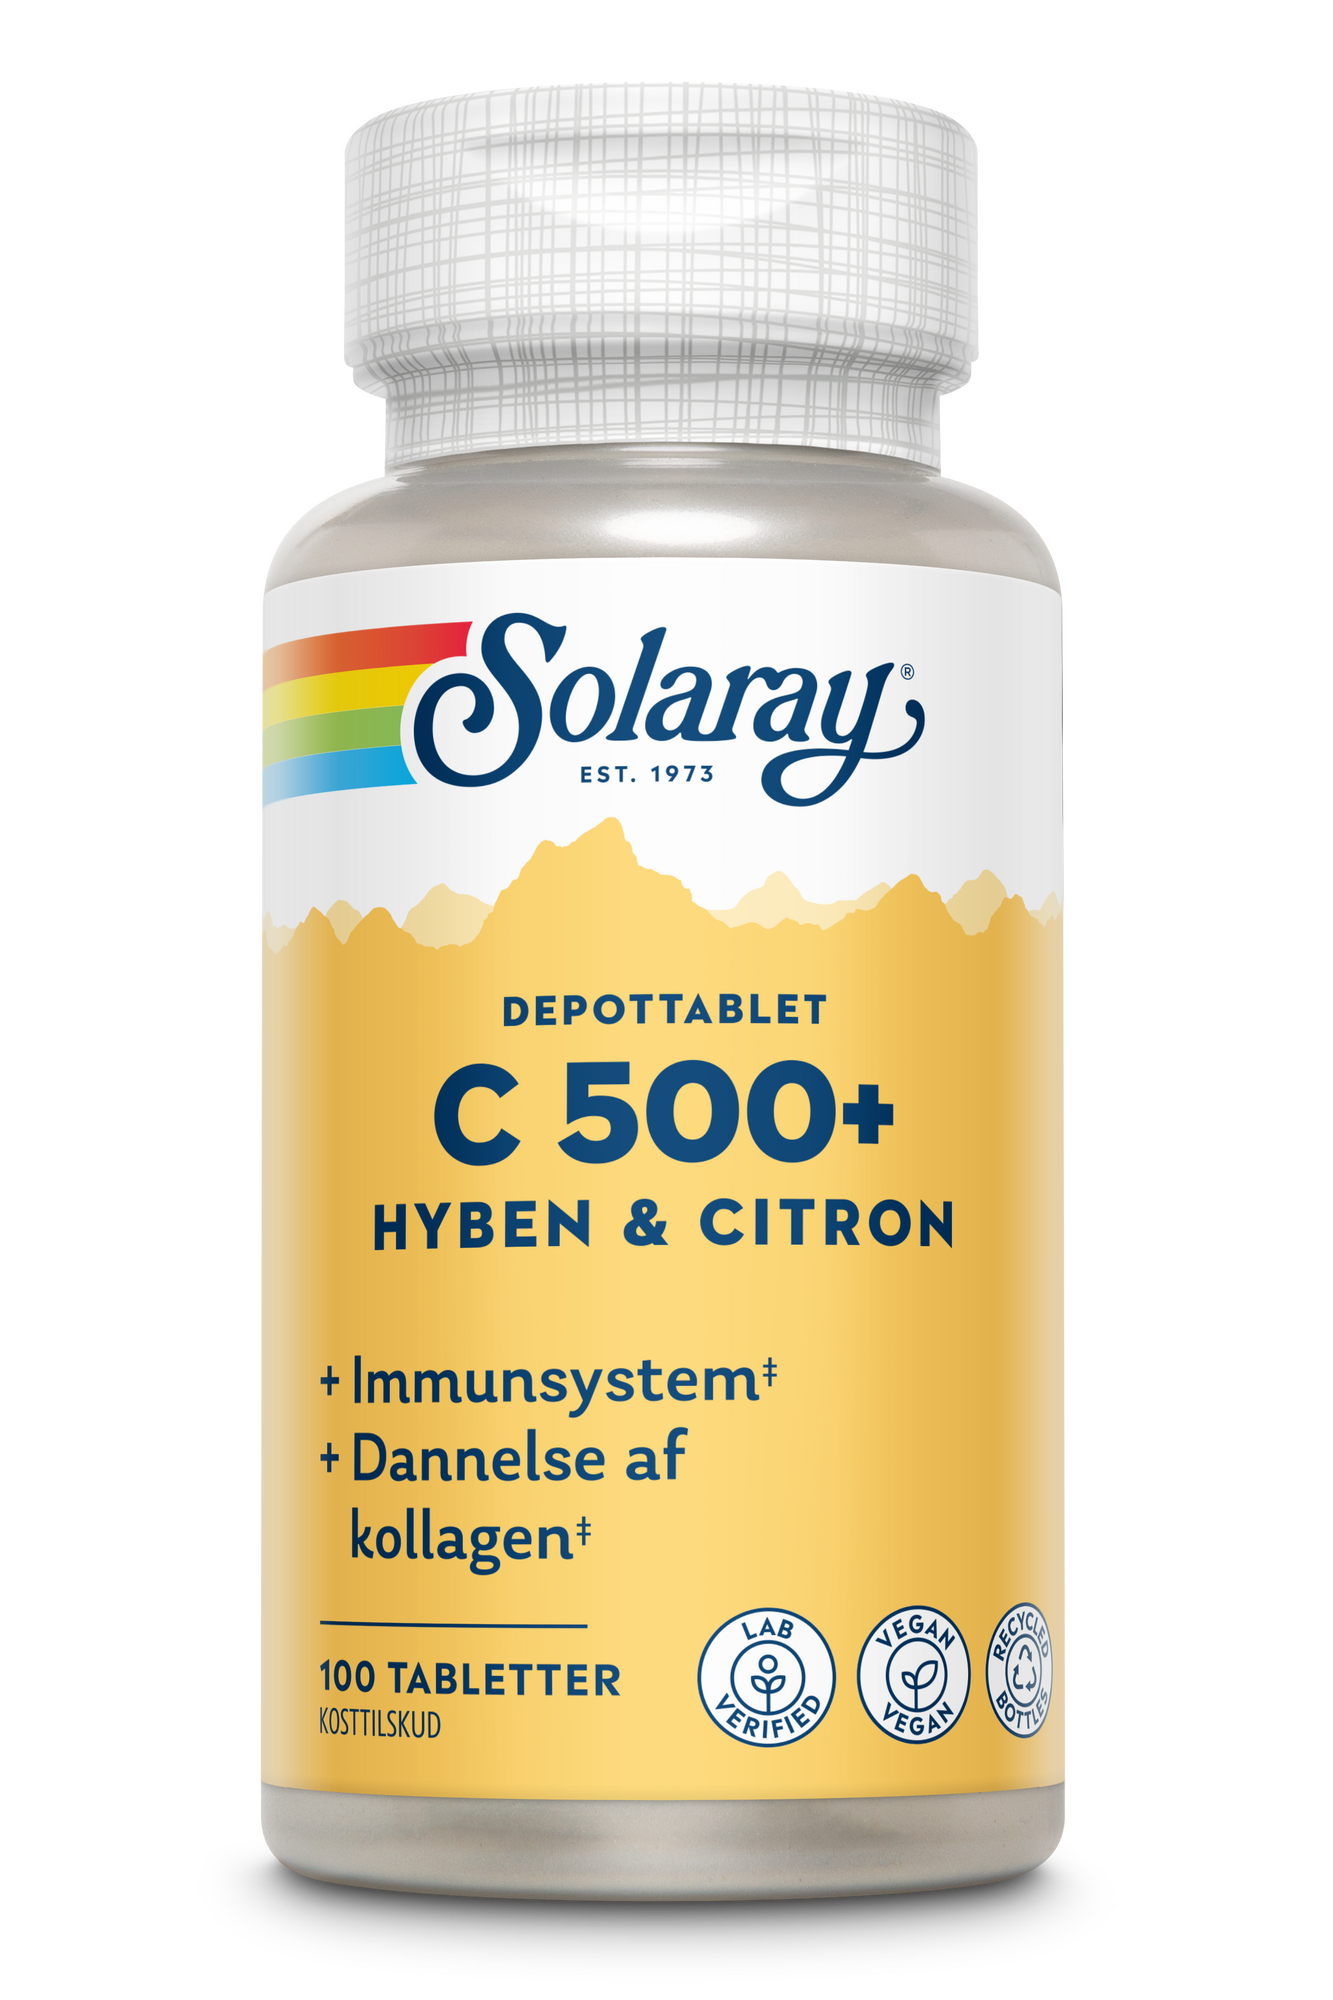 Billede af C-vitamin C500+ hyben, citron Solaray - 100 tabletter hos Duft og Natur